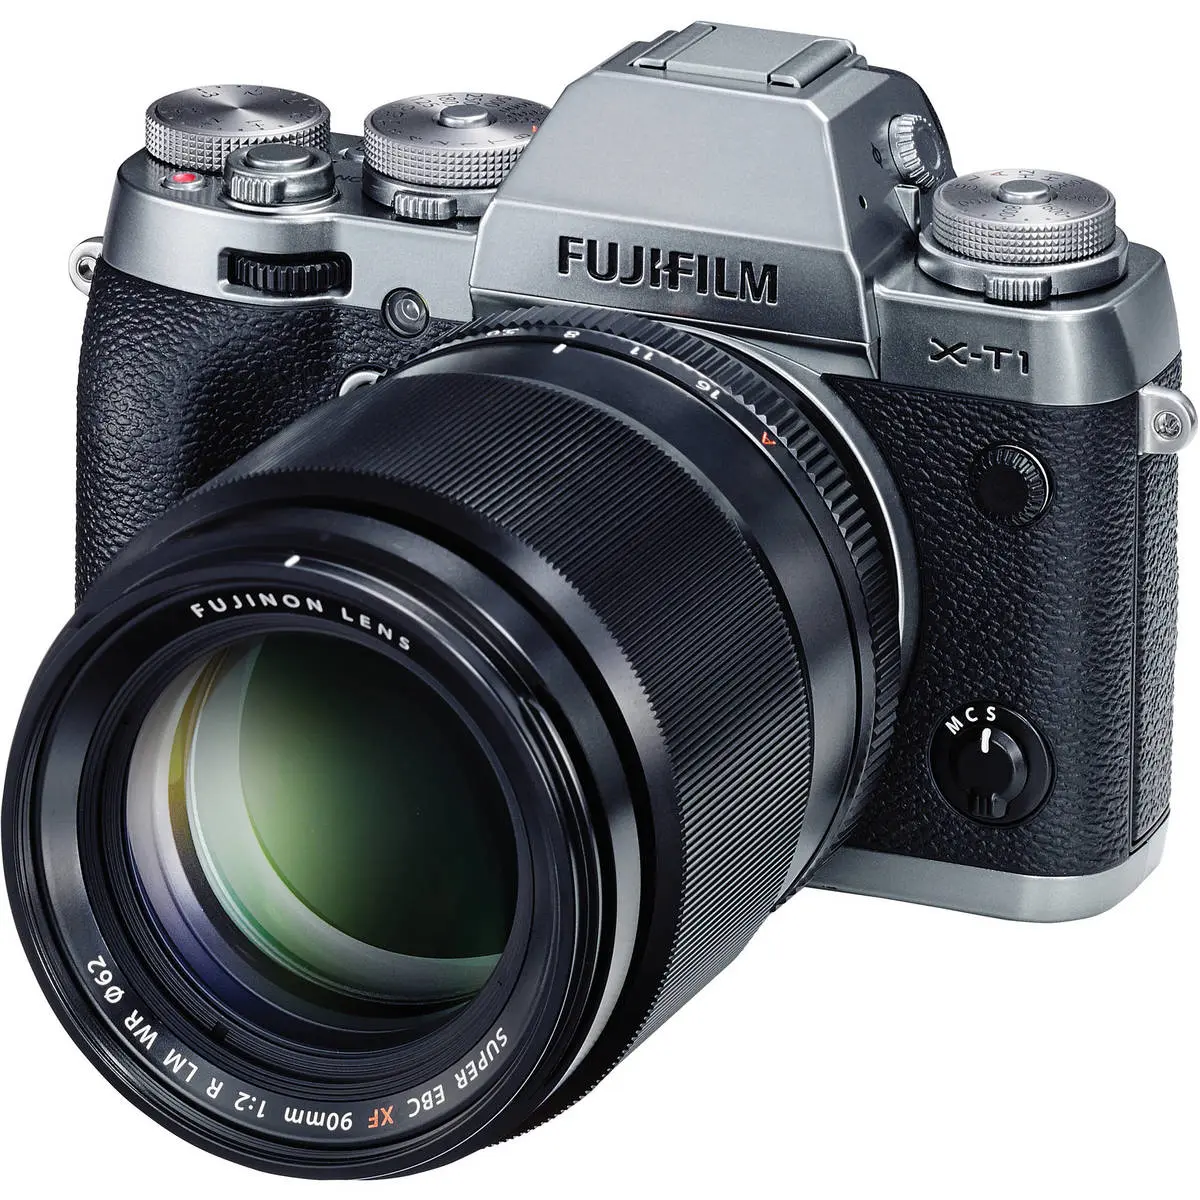 3. Fujifilm FUJINON XF 90mm F2 R LM WR Lens